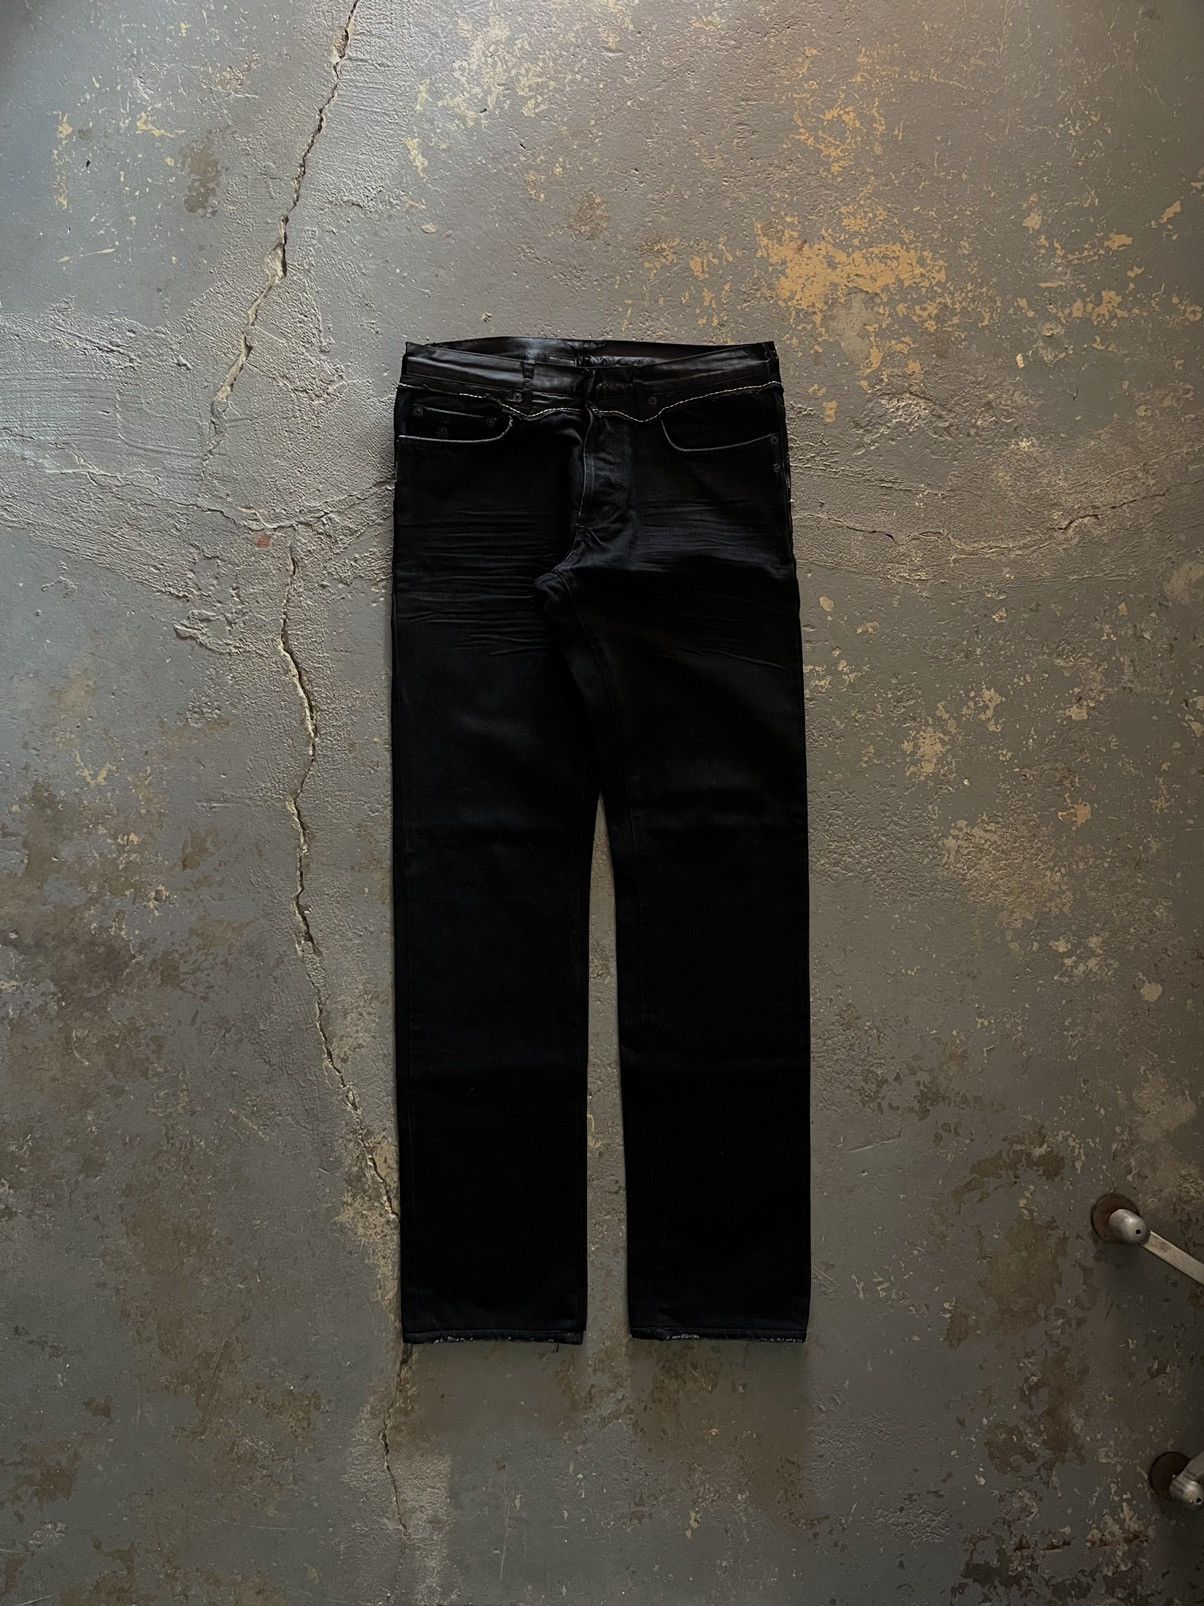 Dior AW06 Satin Cummerbund Jeans | Grailed